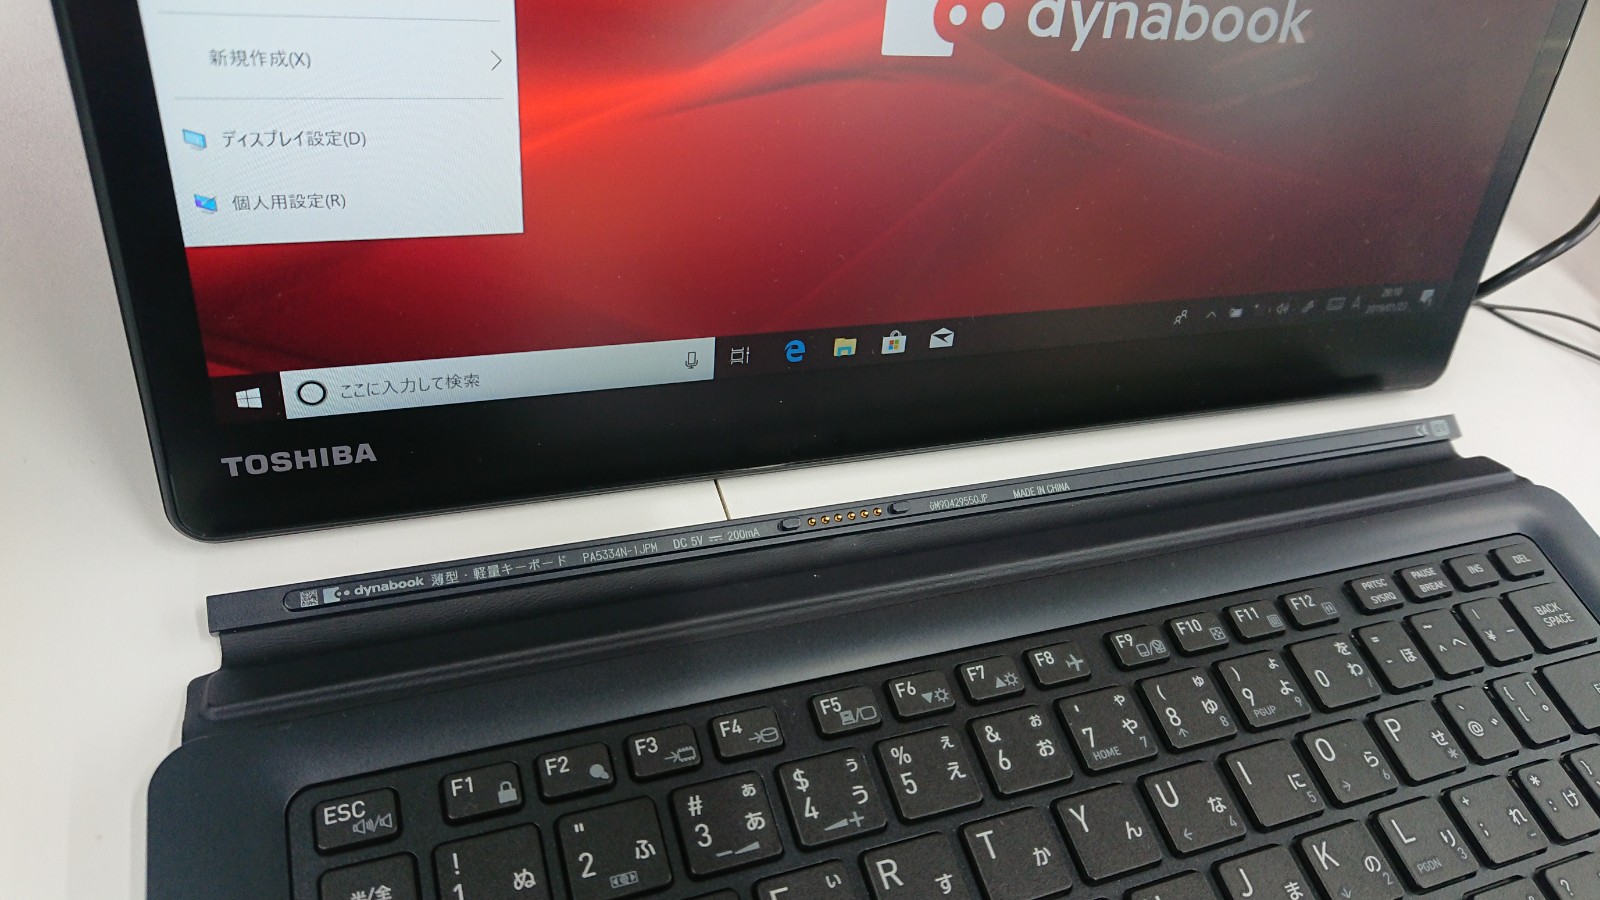 DynaBookのタブレット型パソコン「DZ83（D7）」の脱着の図